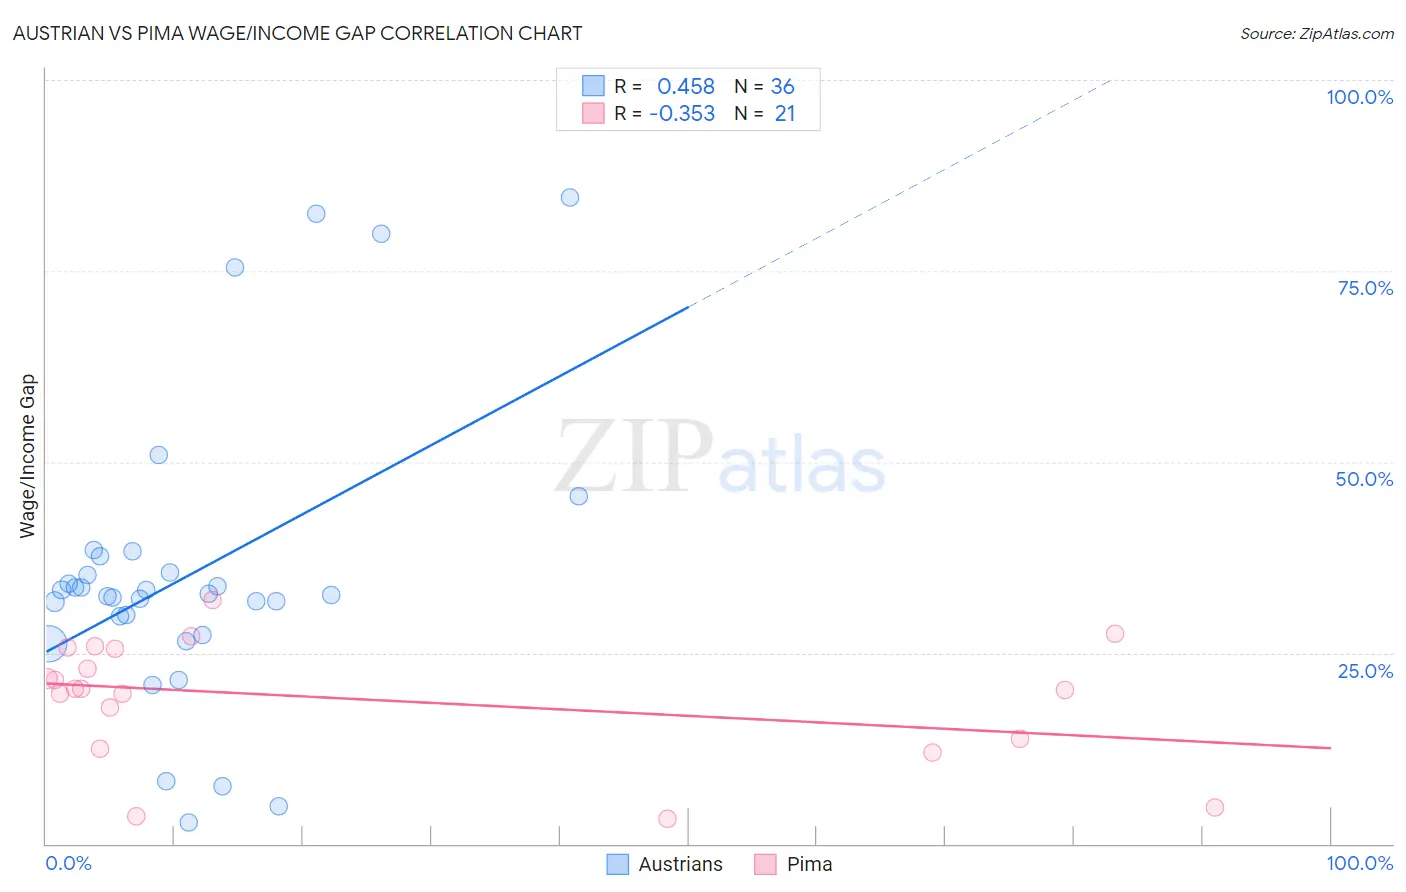 Austrian vs Pima Wage/Income Gap